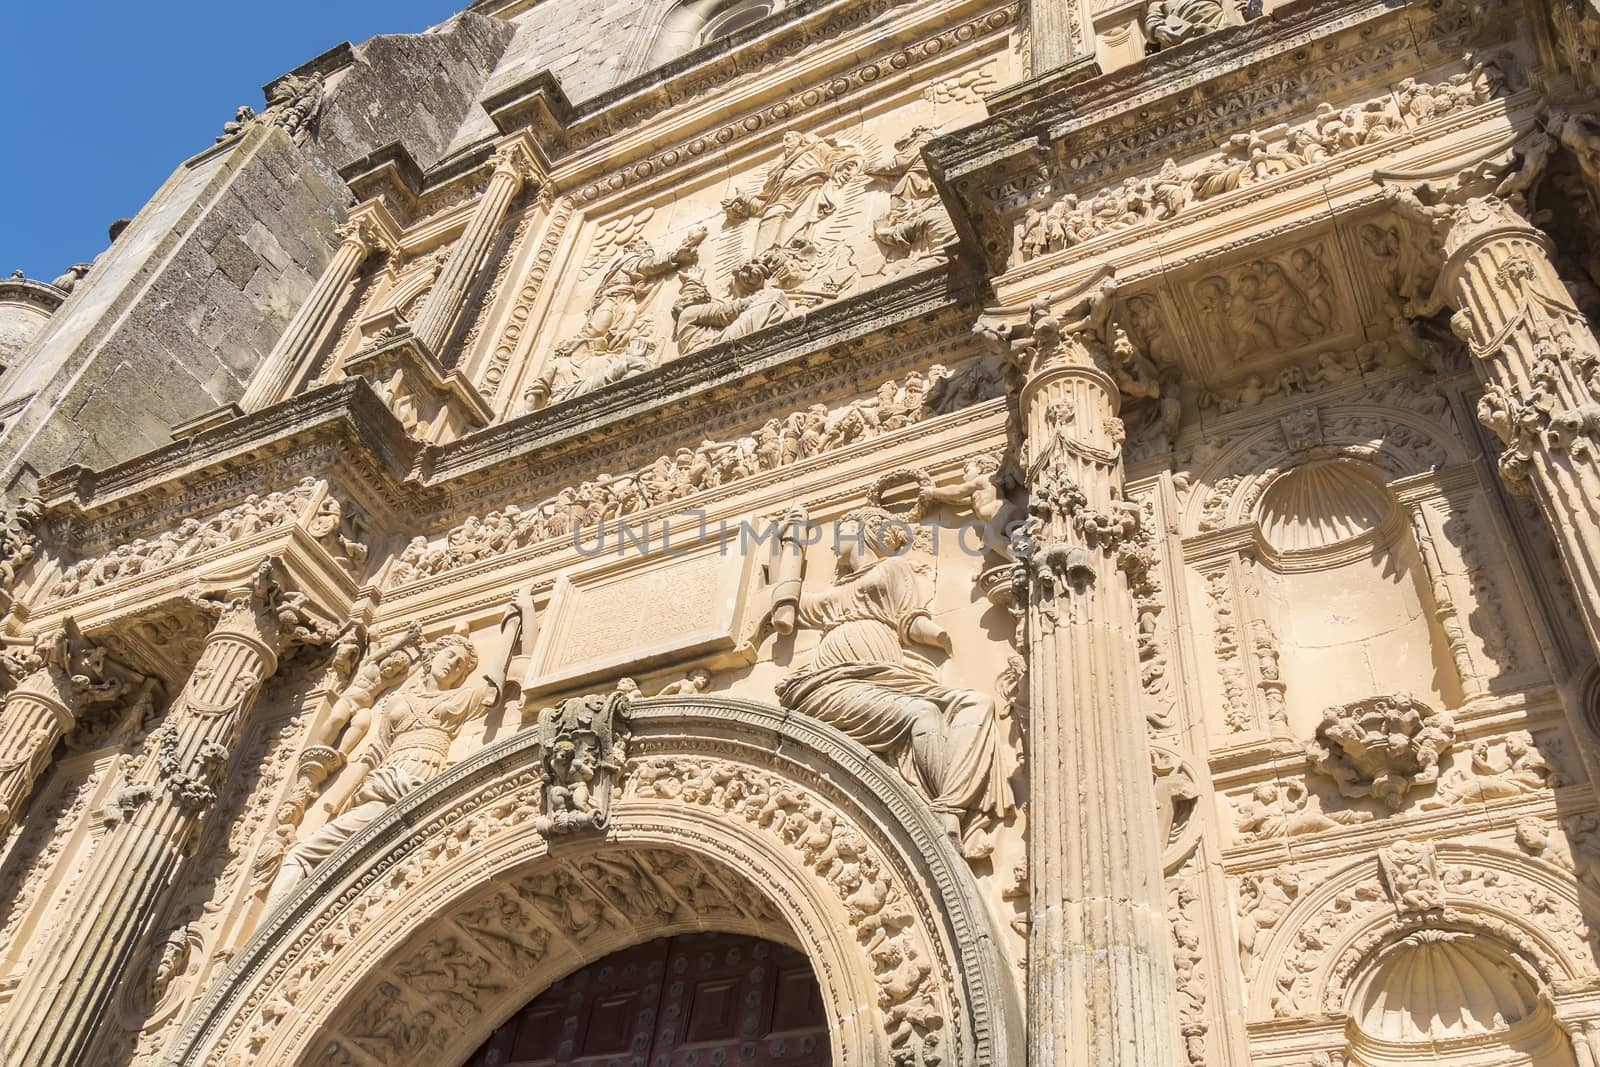 Savior Chapel (El Salvador) detail facade, Ubeda, Jaen, Spain by max8xam